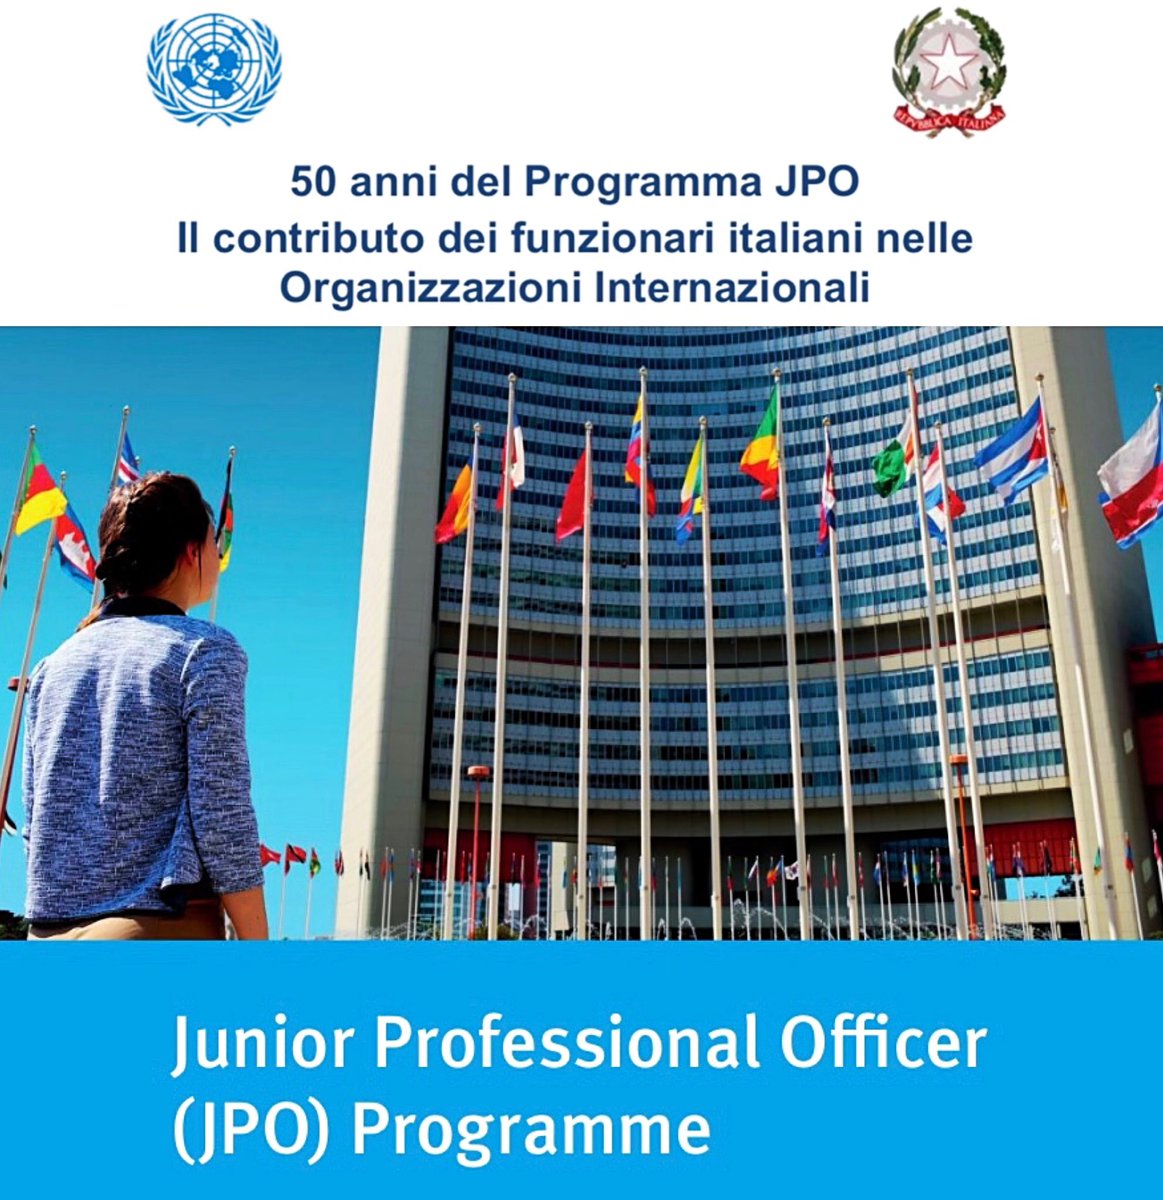 Domani in @ItalyMFA interverrò al 50 Anniversario del Programma JPO. Ideato per offrire ai giovani diplomati, la possibilità di acquisire esperienza professionale nella #CooperazioneInternazionale multilaterale @UN.

#Formazione #organizzazioniinternazionali 

@Onuitalia